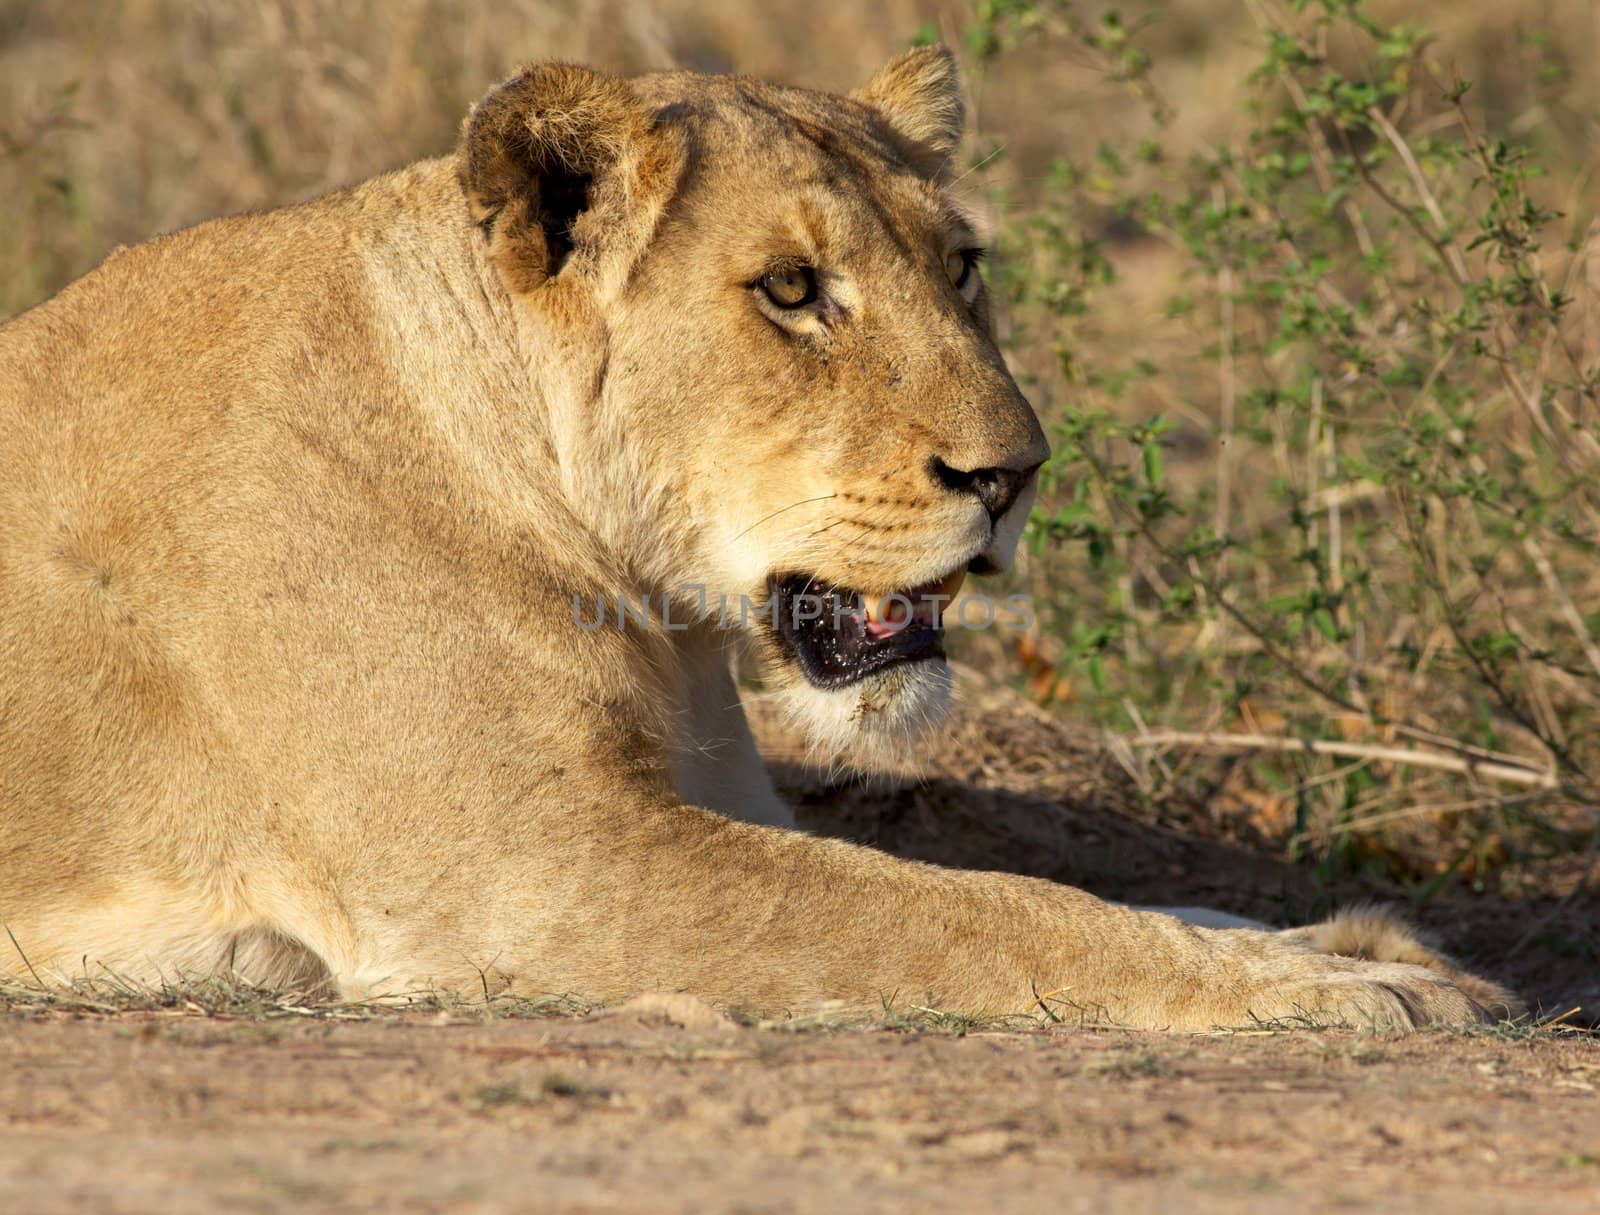 Lioness by zambezi